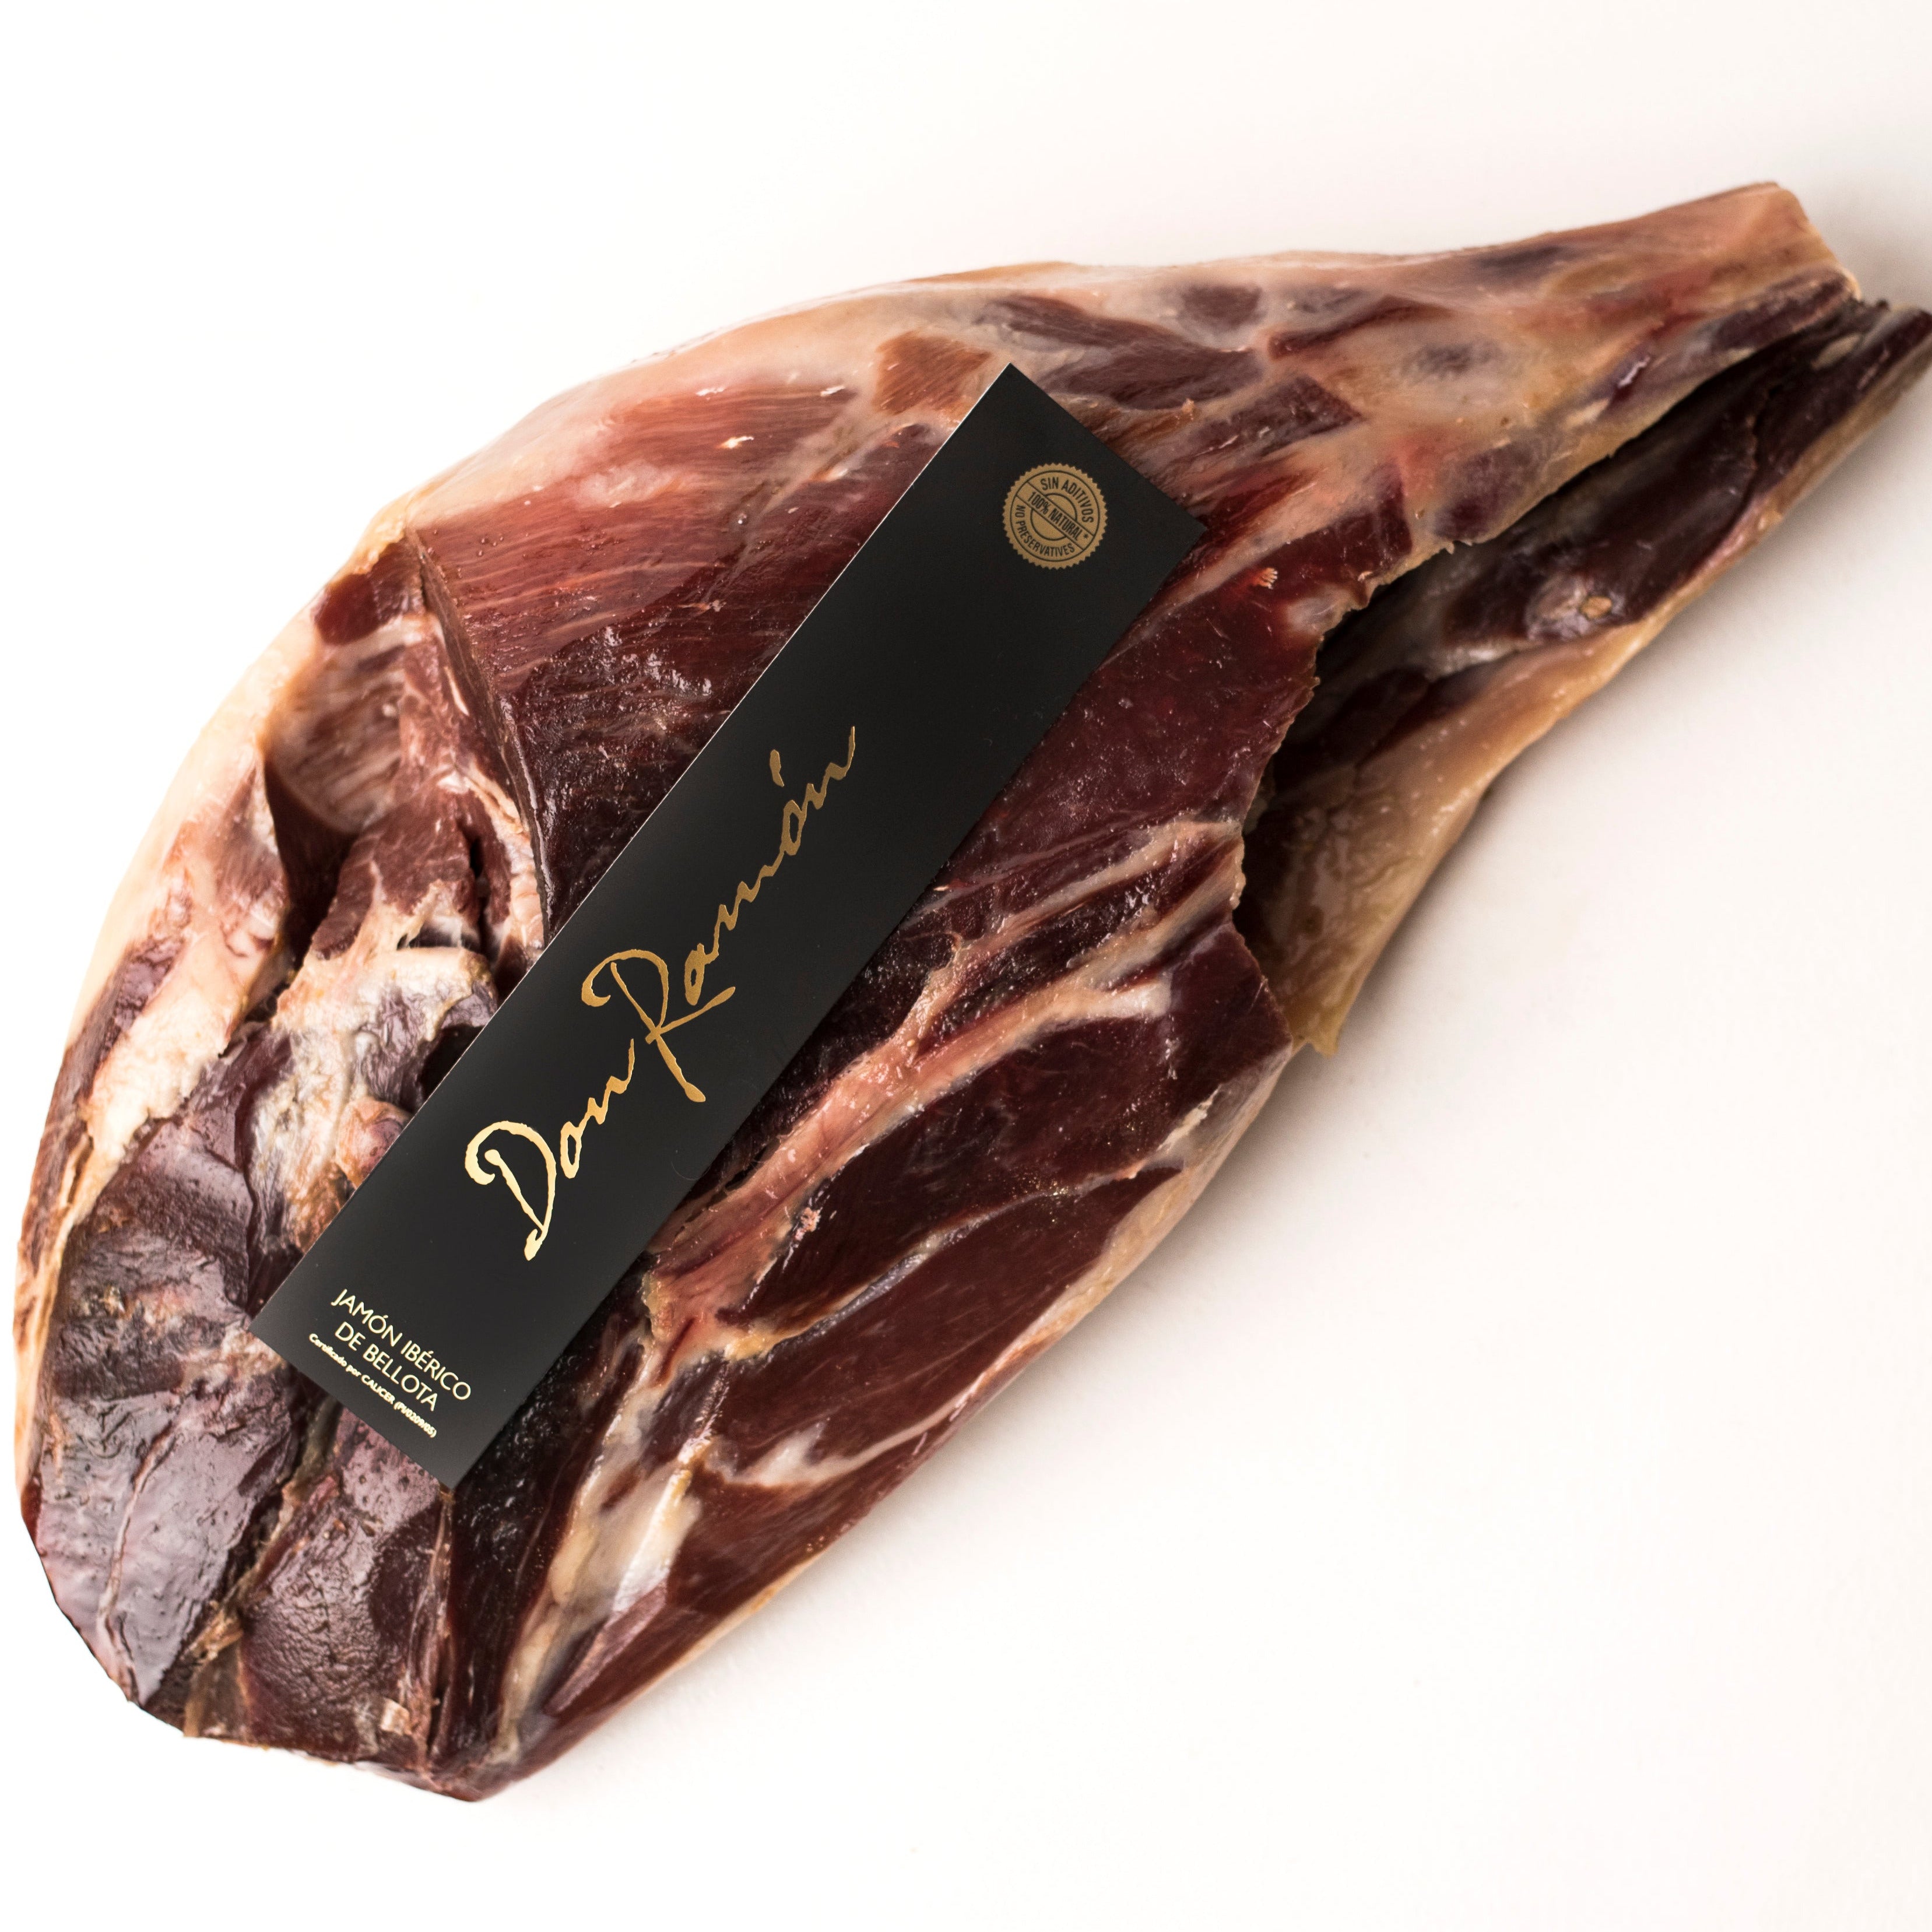 Pata negra 100% pure Iberian Ham - Jamonarium